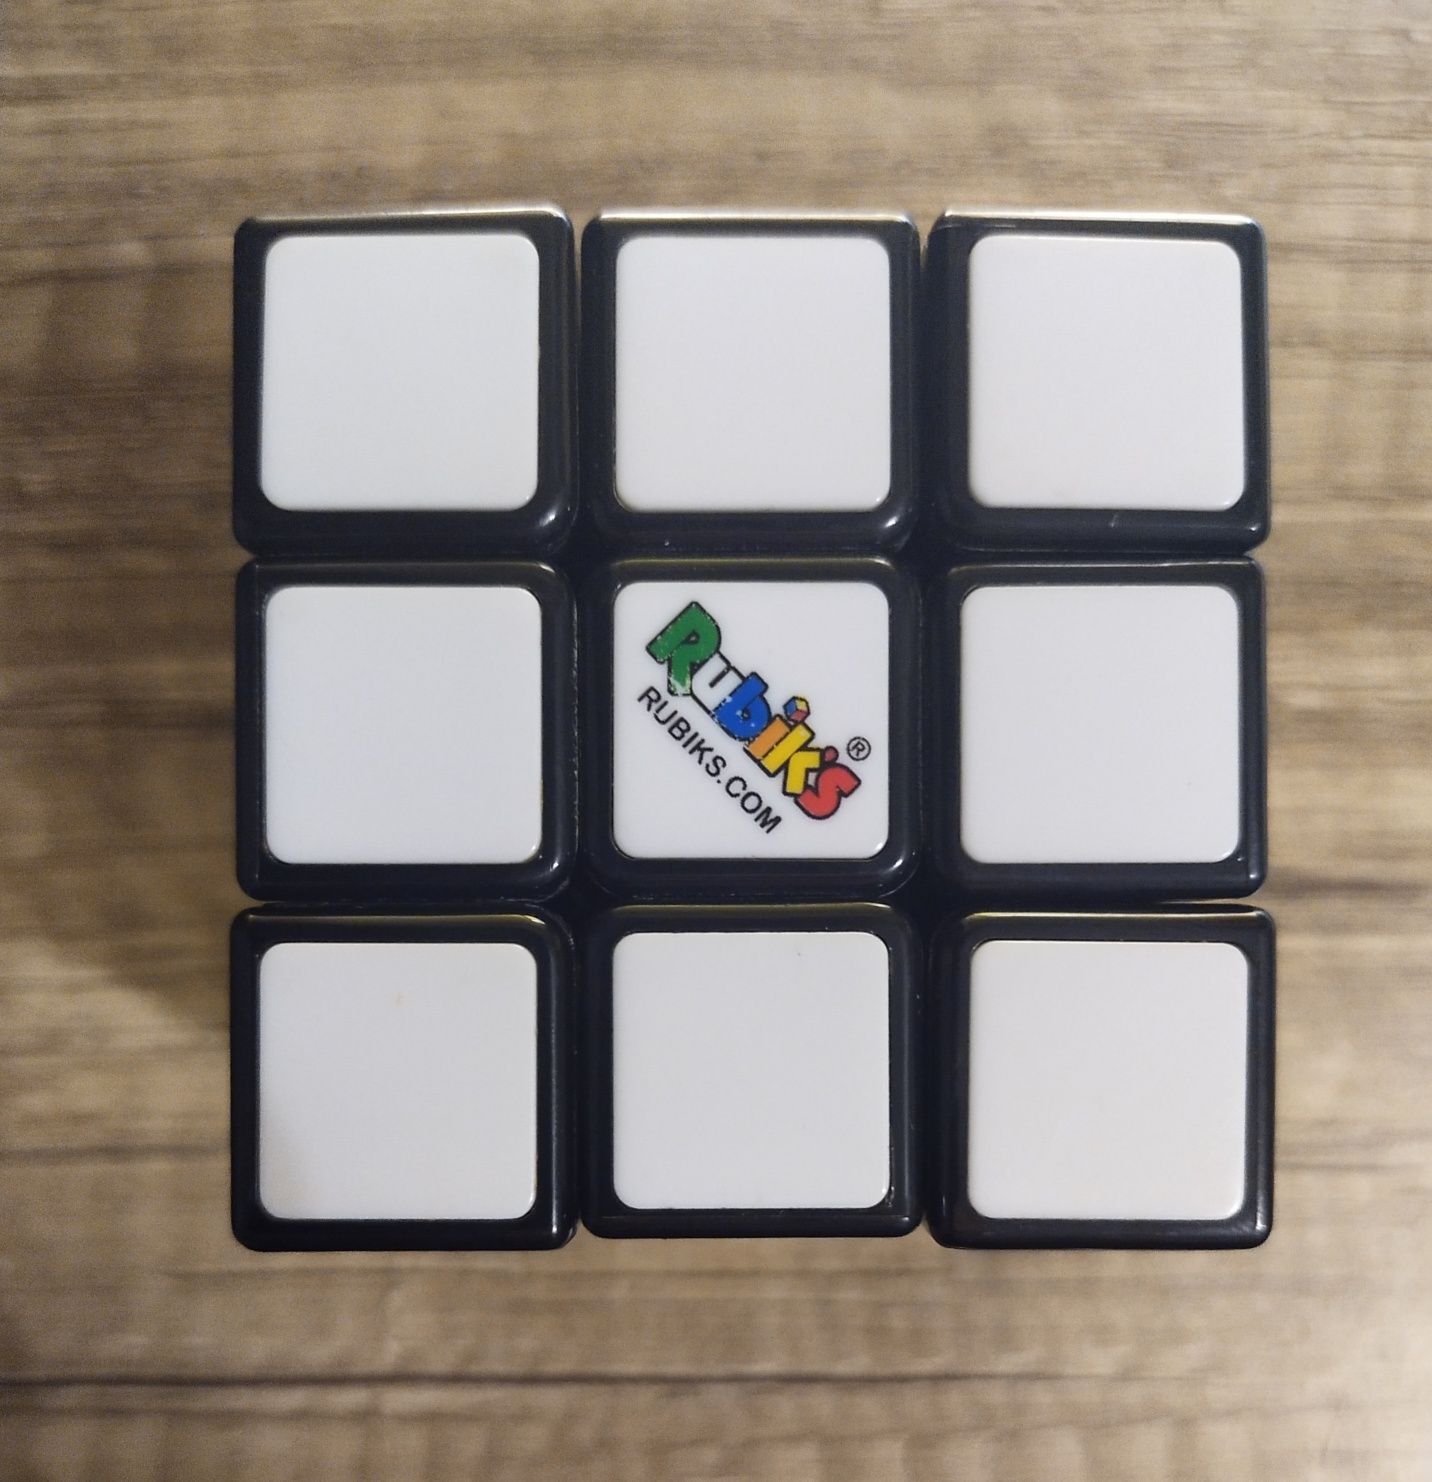 kostka Rubika - Rubik's. com